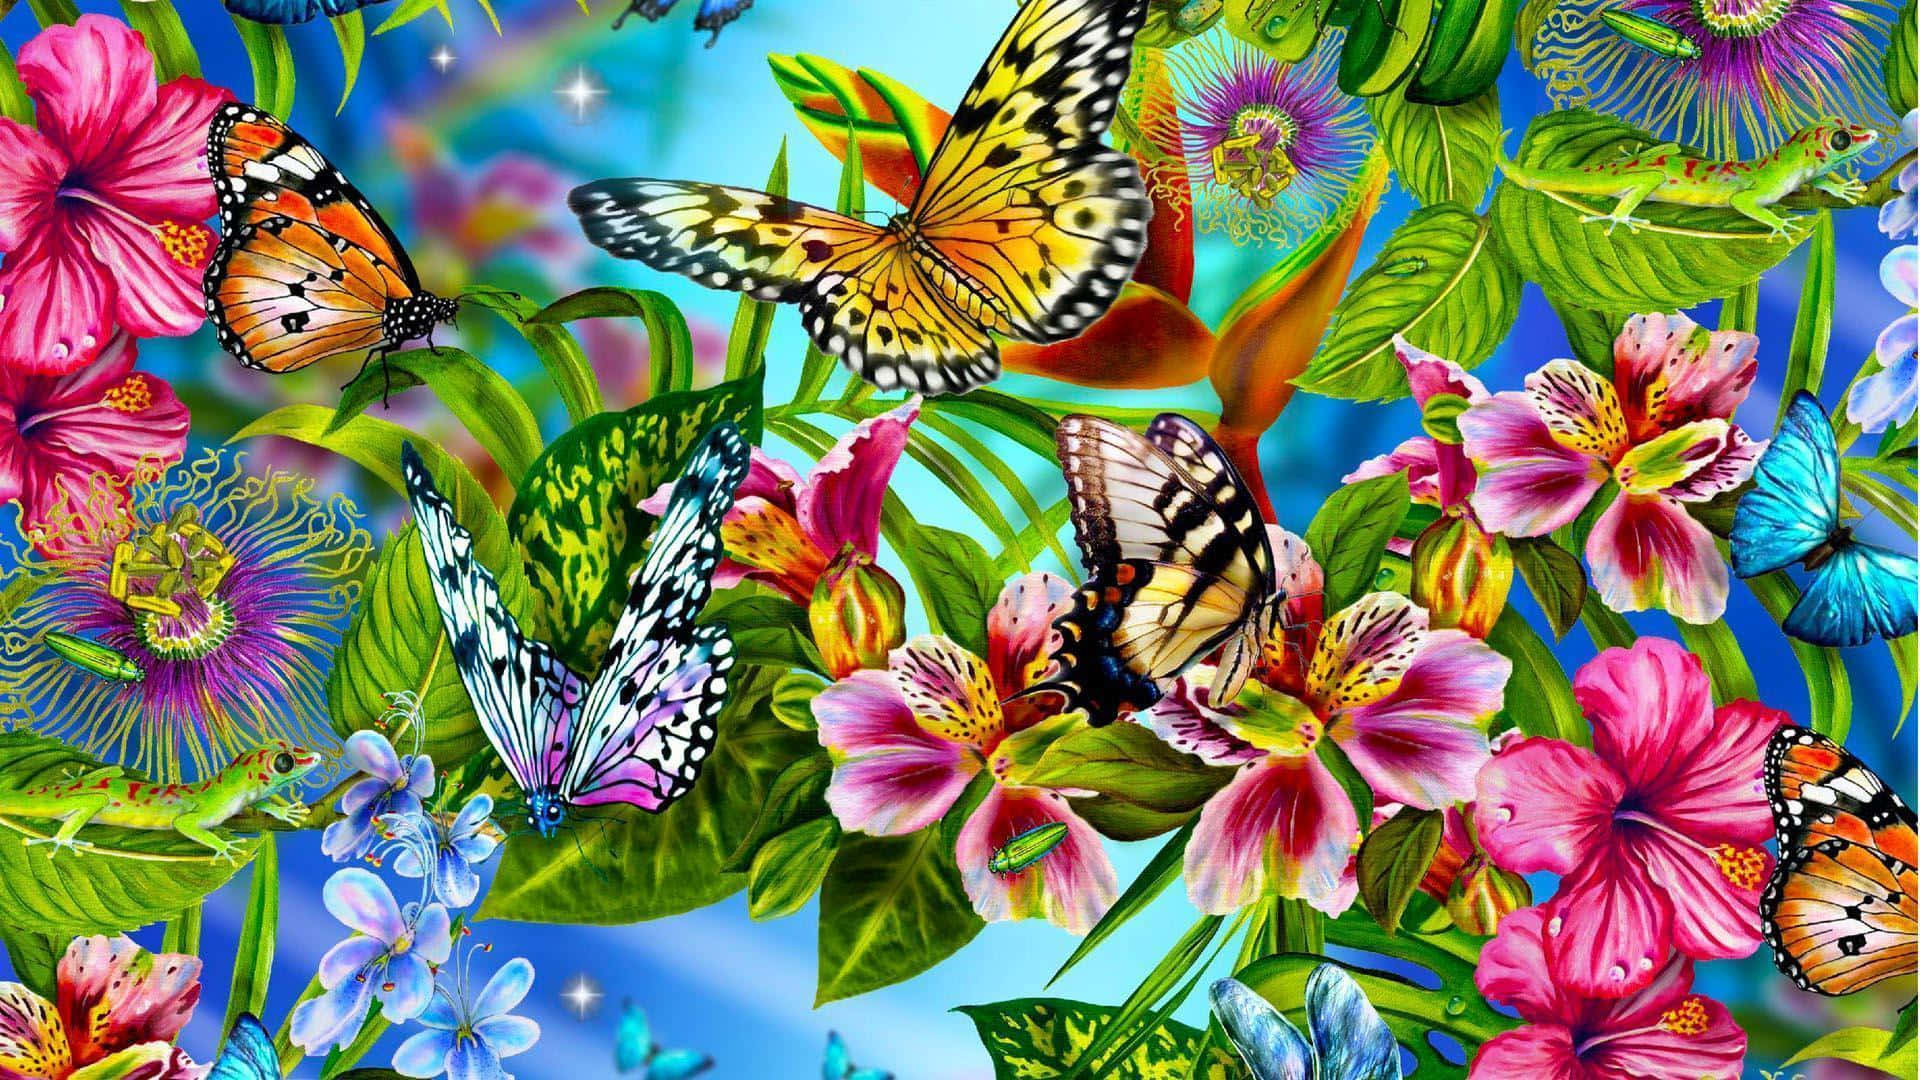 Unpatrón Colorido De Mariposas Y Flores Fondo de pantalla